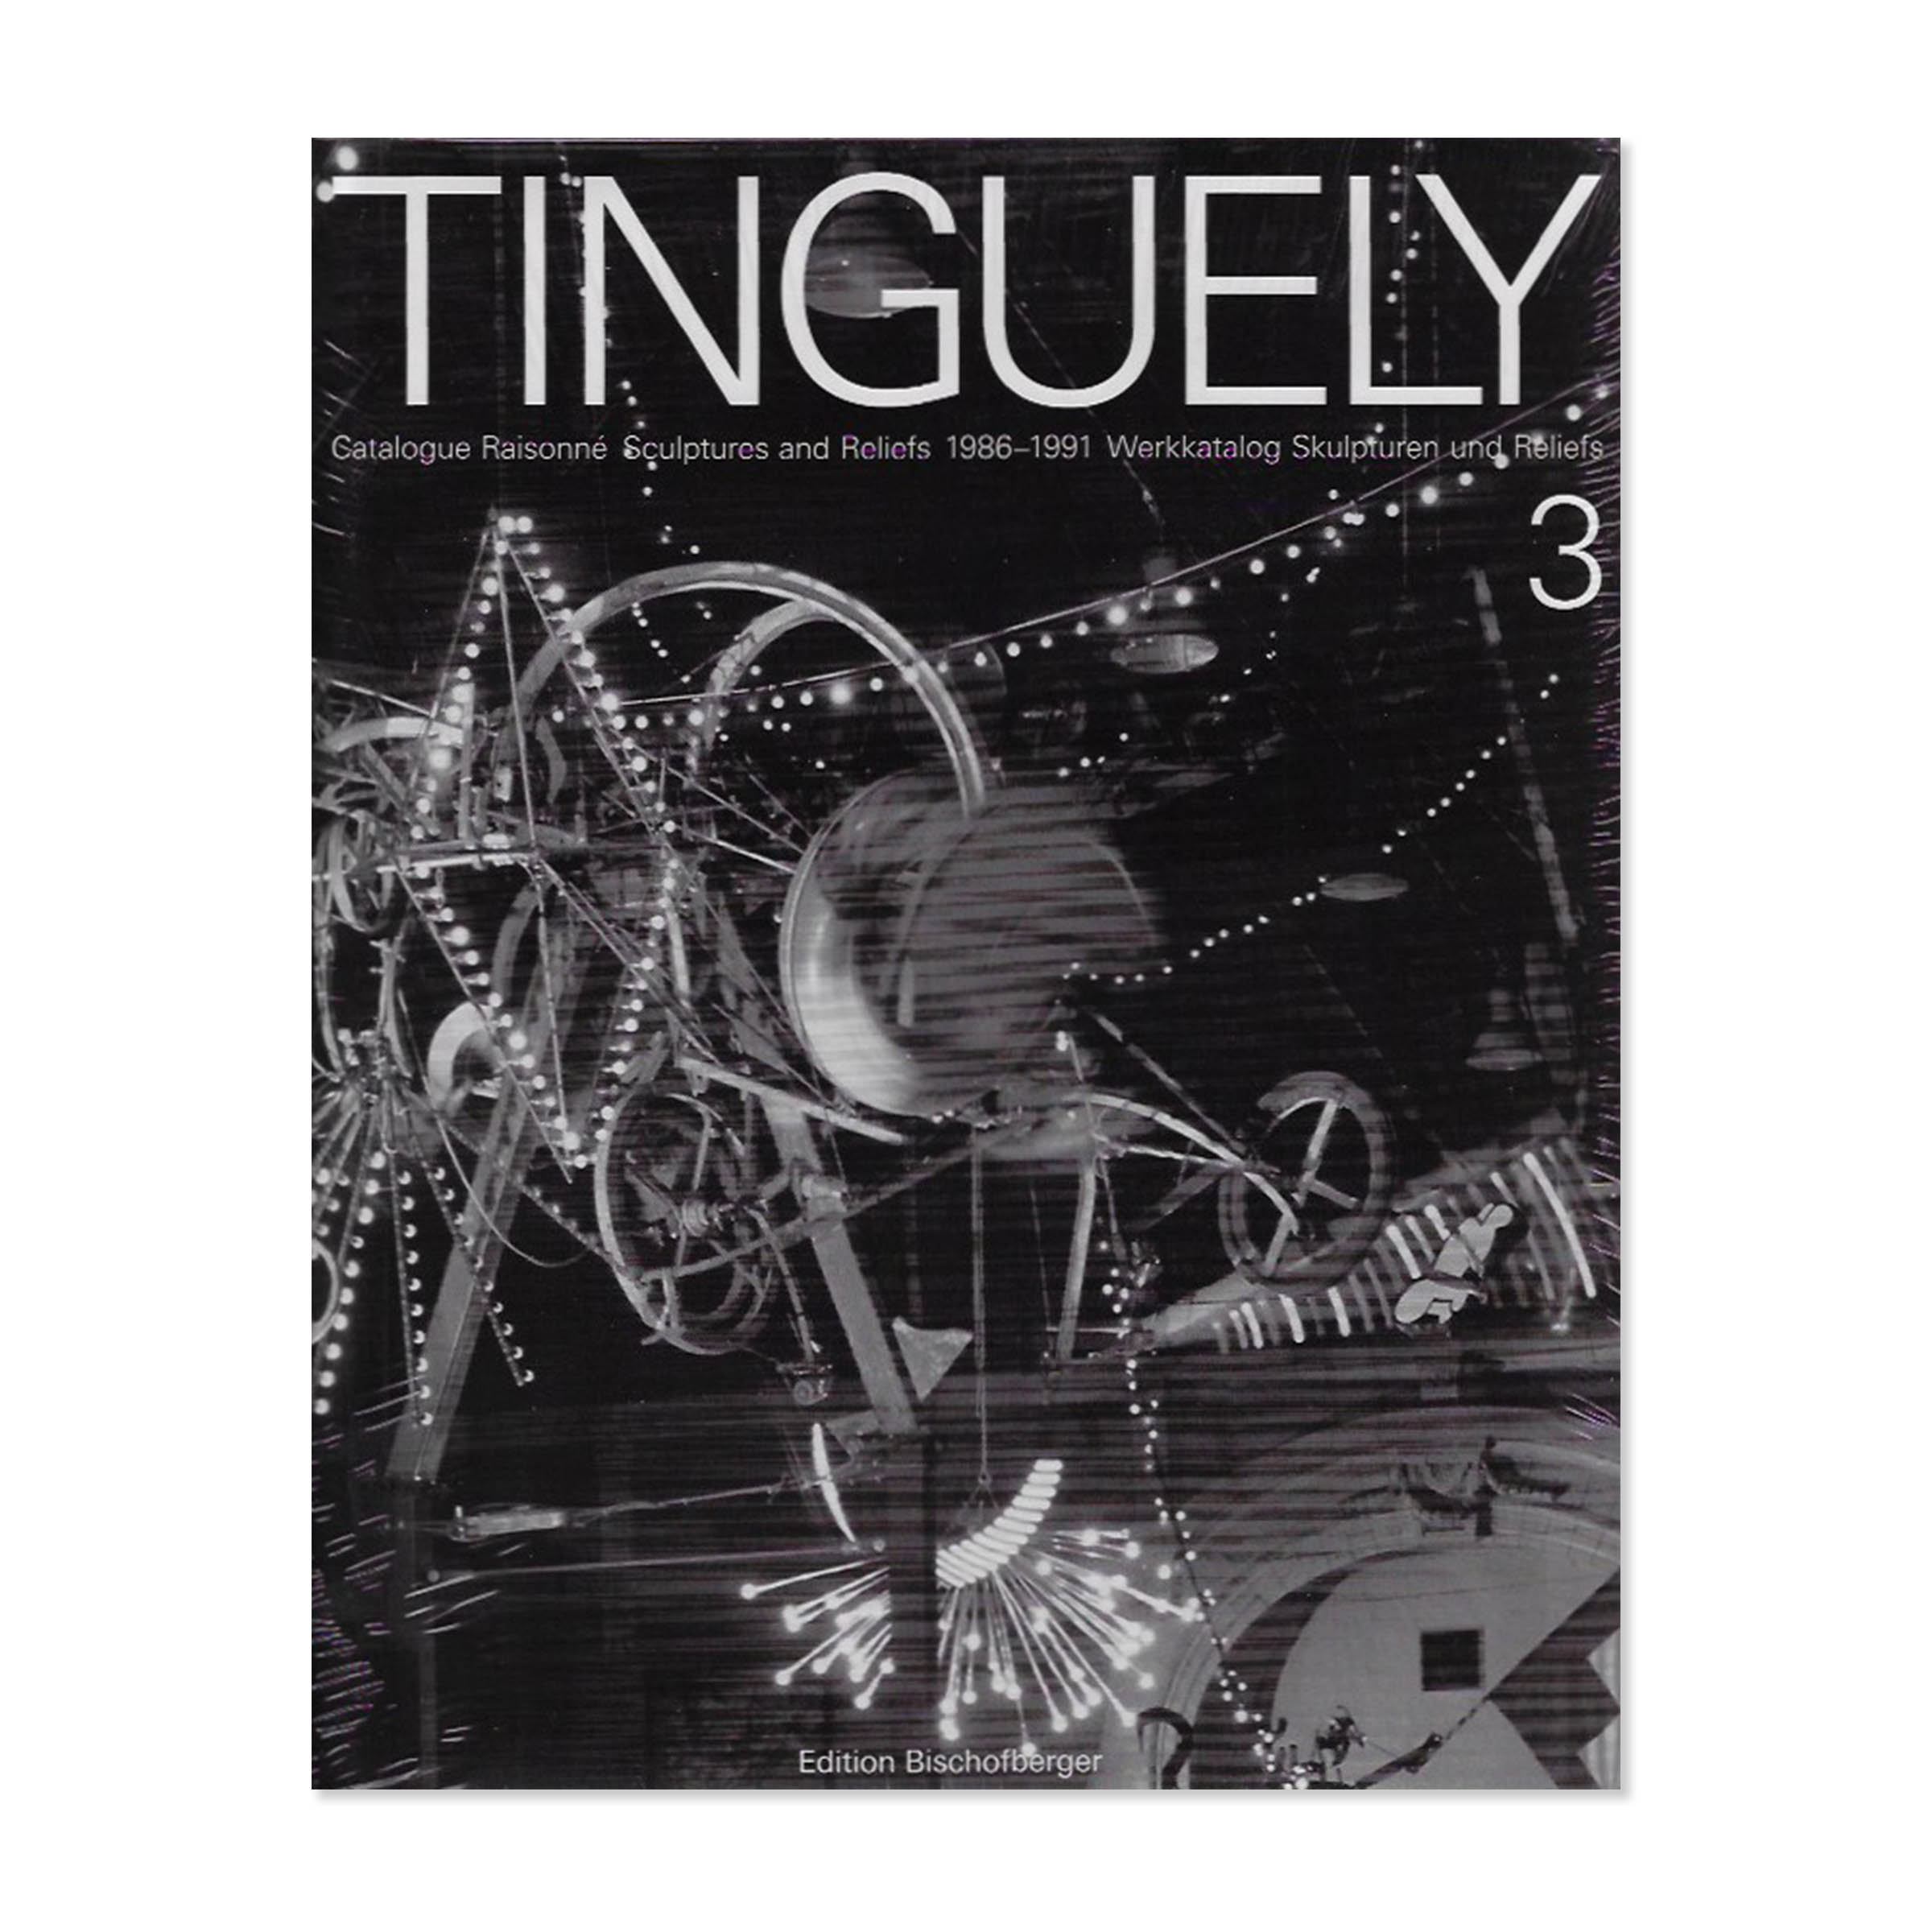 Tinguely. Catalogue raisonné. Cover view